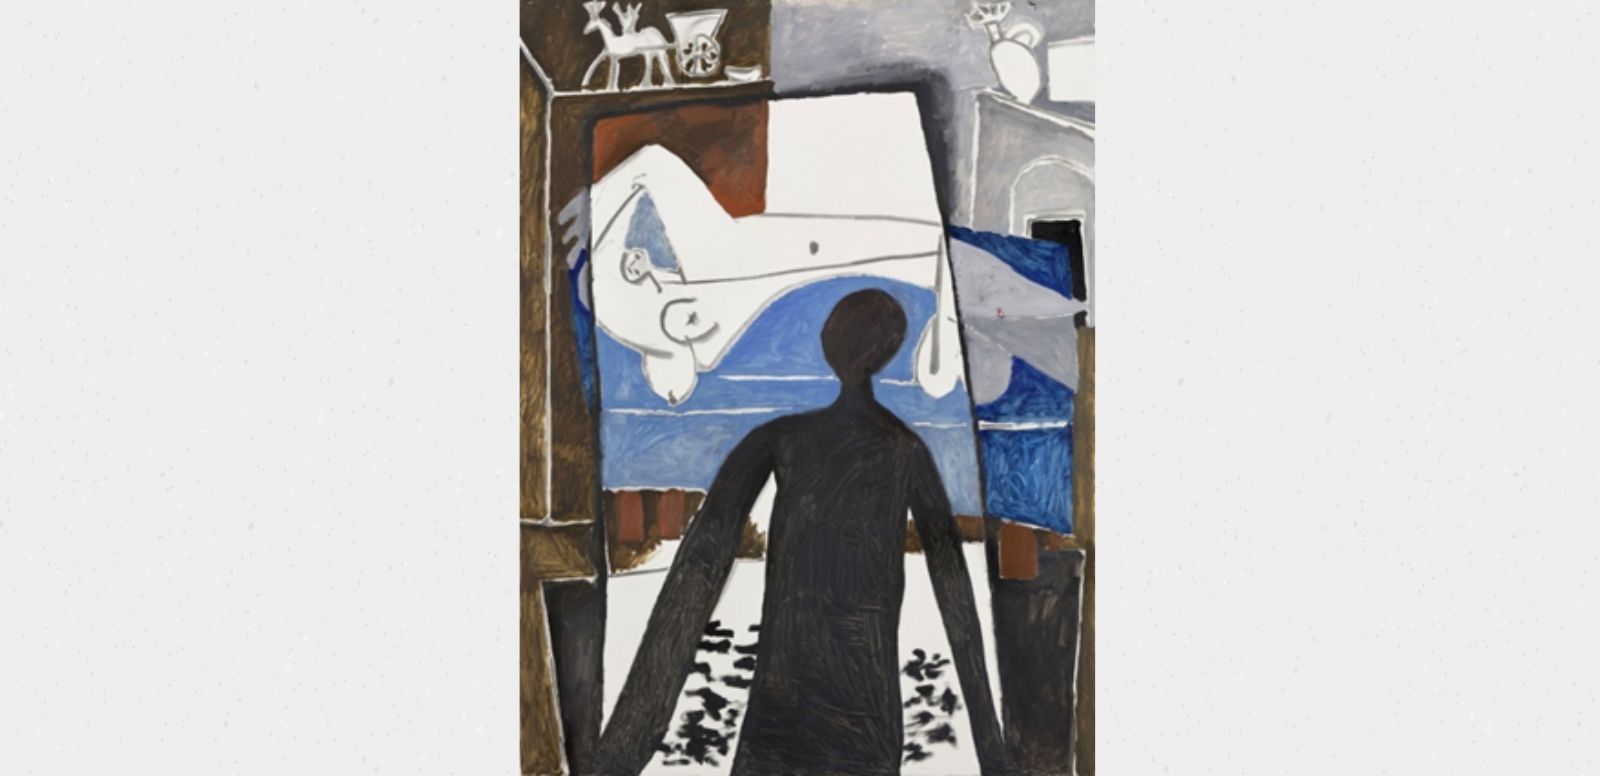 Pablo Picasso, “La sombra”, 1953